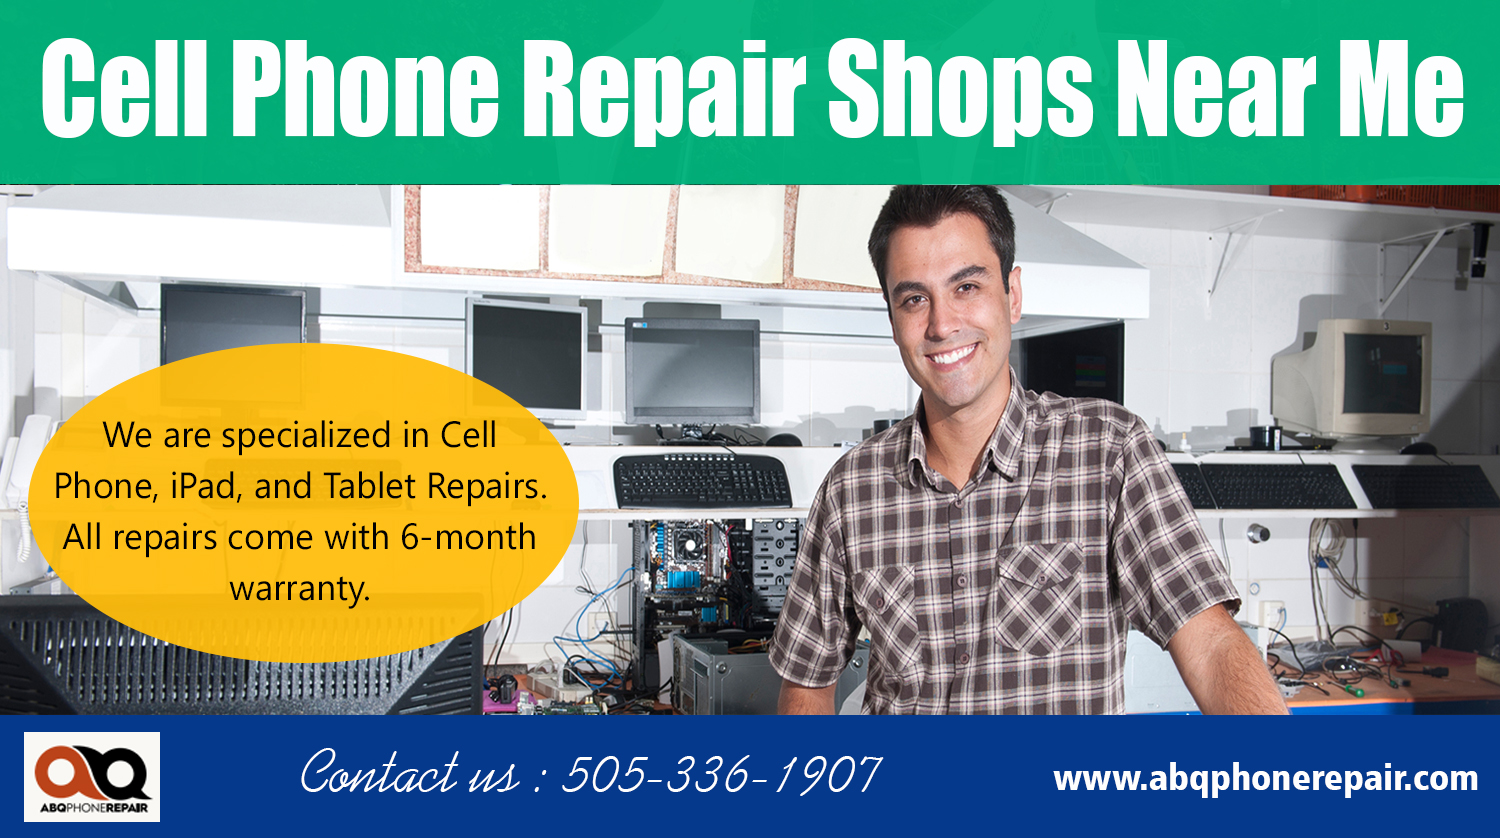 Cell Phone Repair Shops near me | Call - 505-336-1907 ...